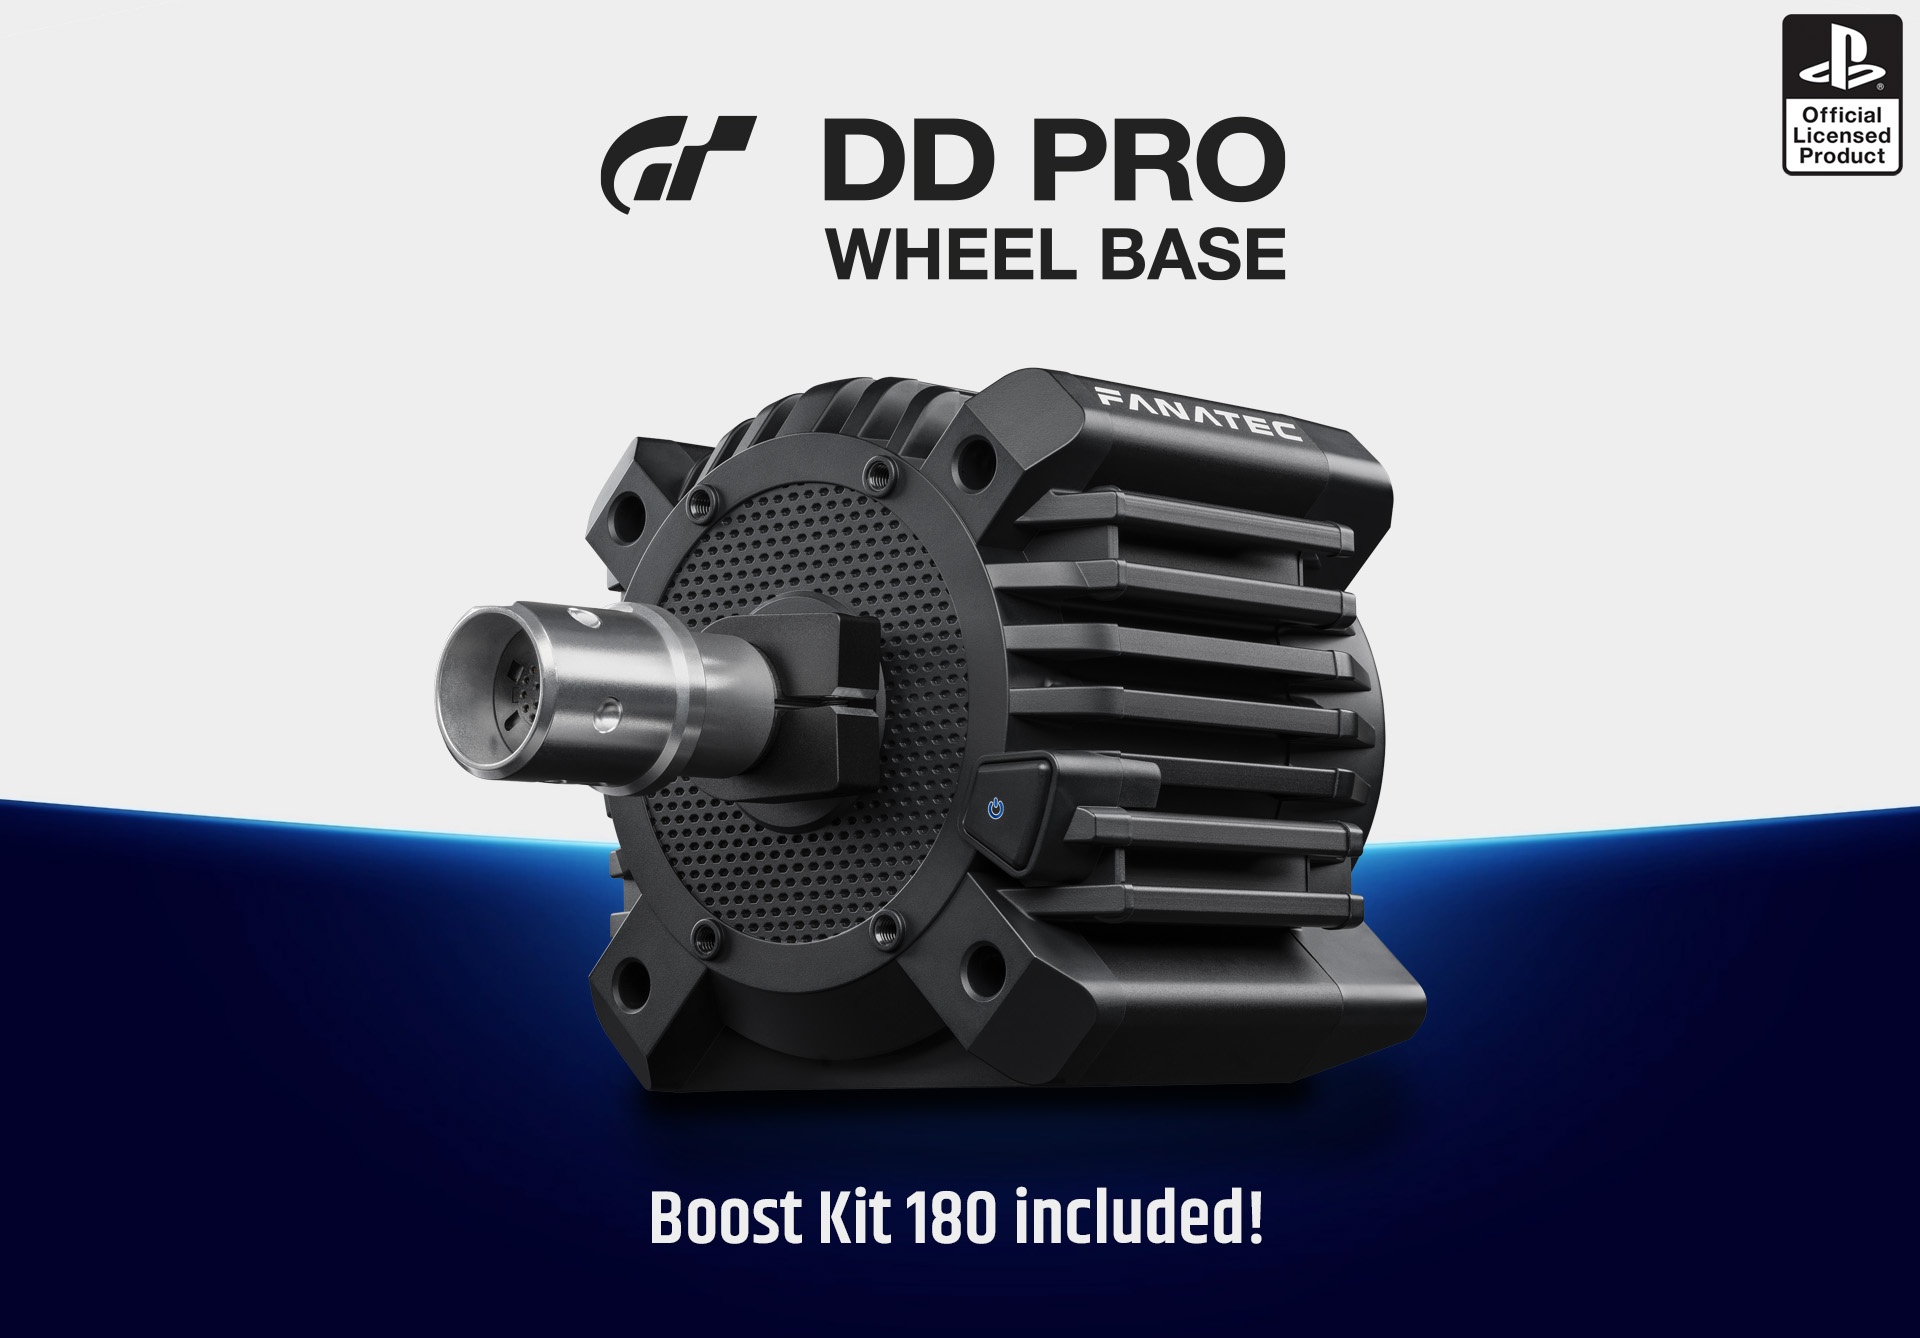 Gran Turismo DD Pro Wheel Base launched! — Fanatec Forum